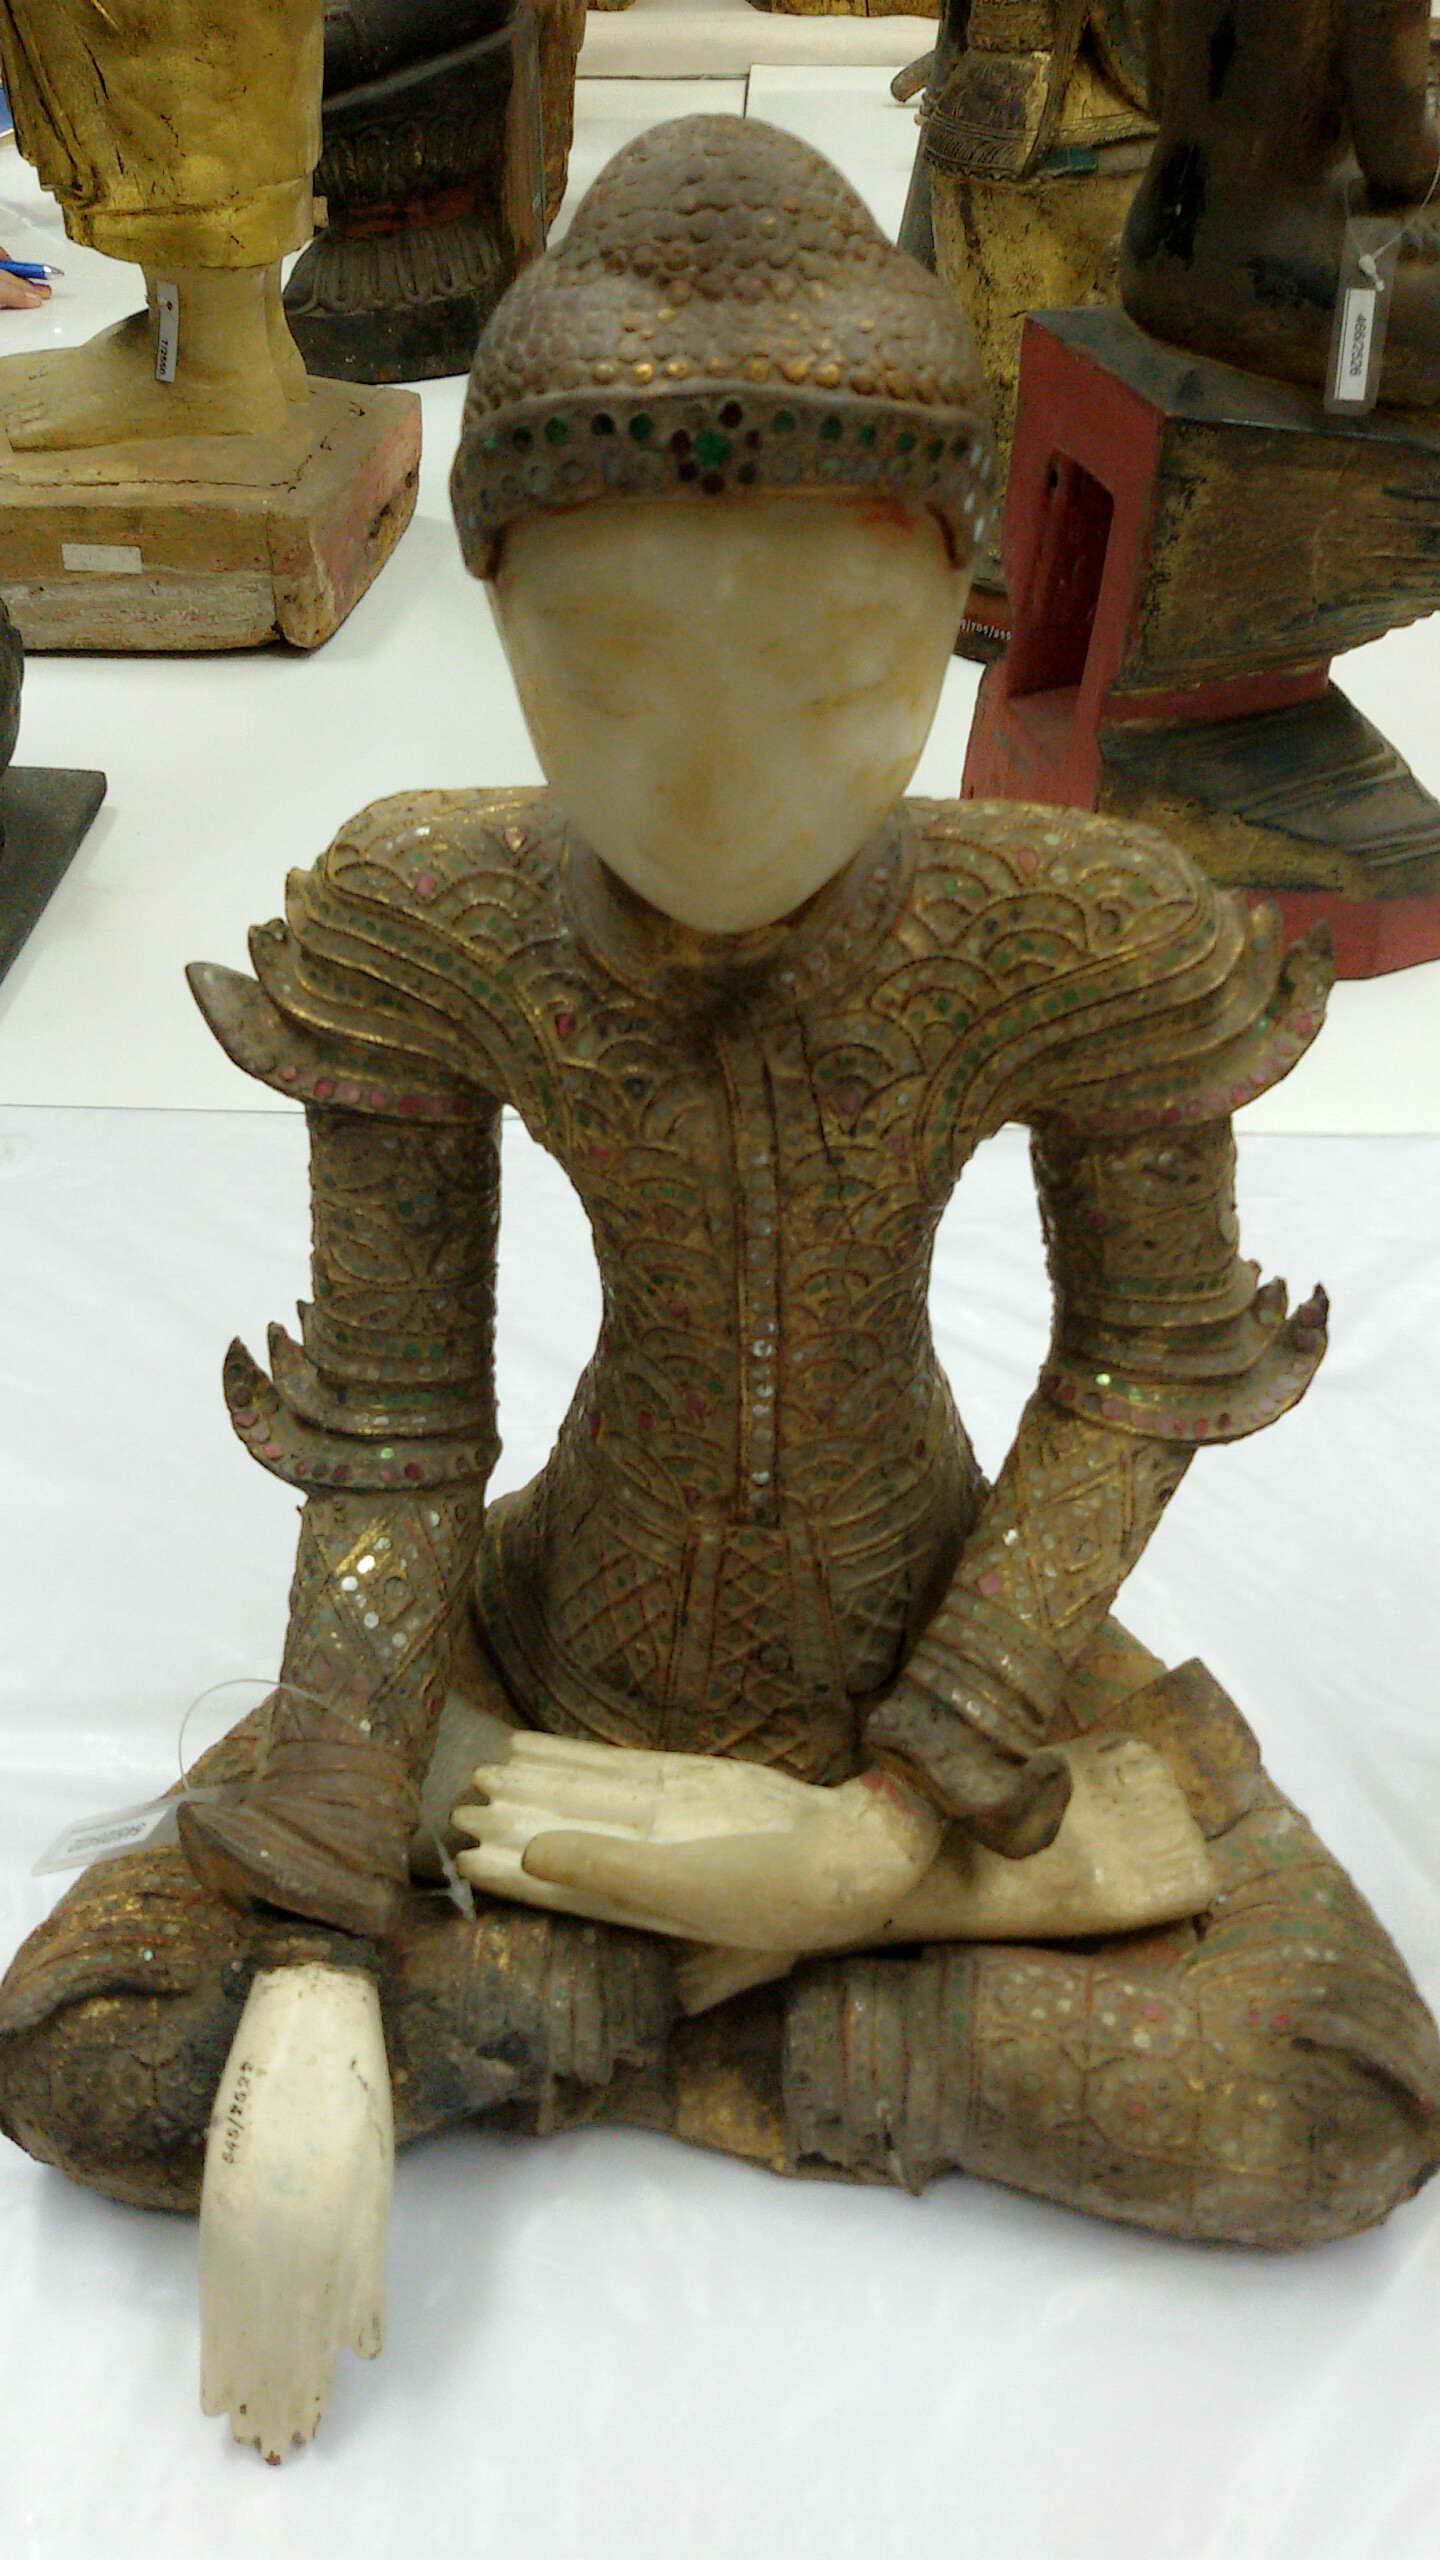 โครงการความรู้ในการตรวจสอบพิสูจน์พระพุทธรูปศิลปะพม่า